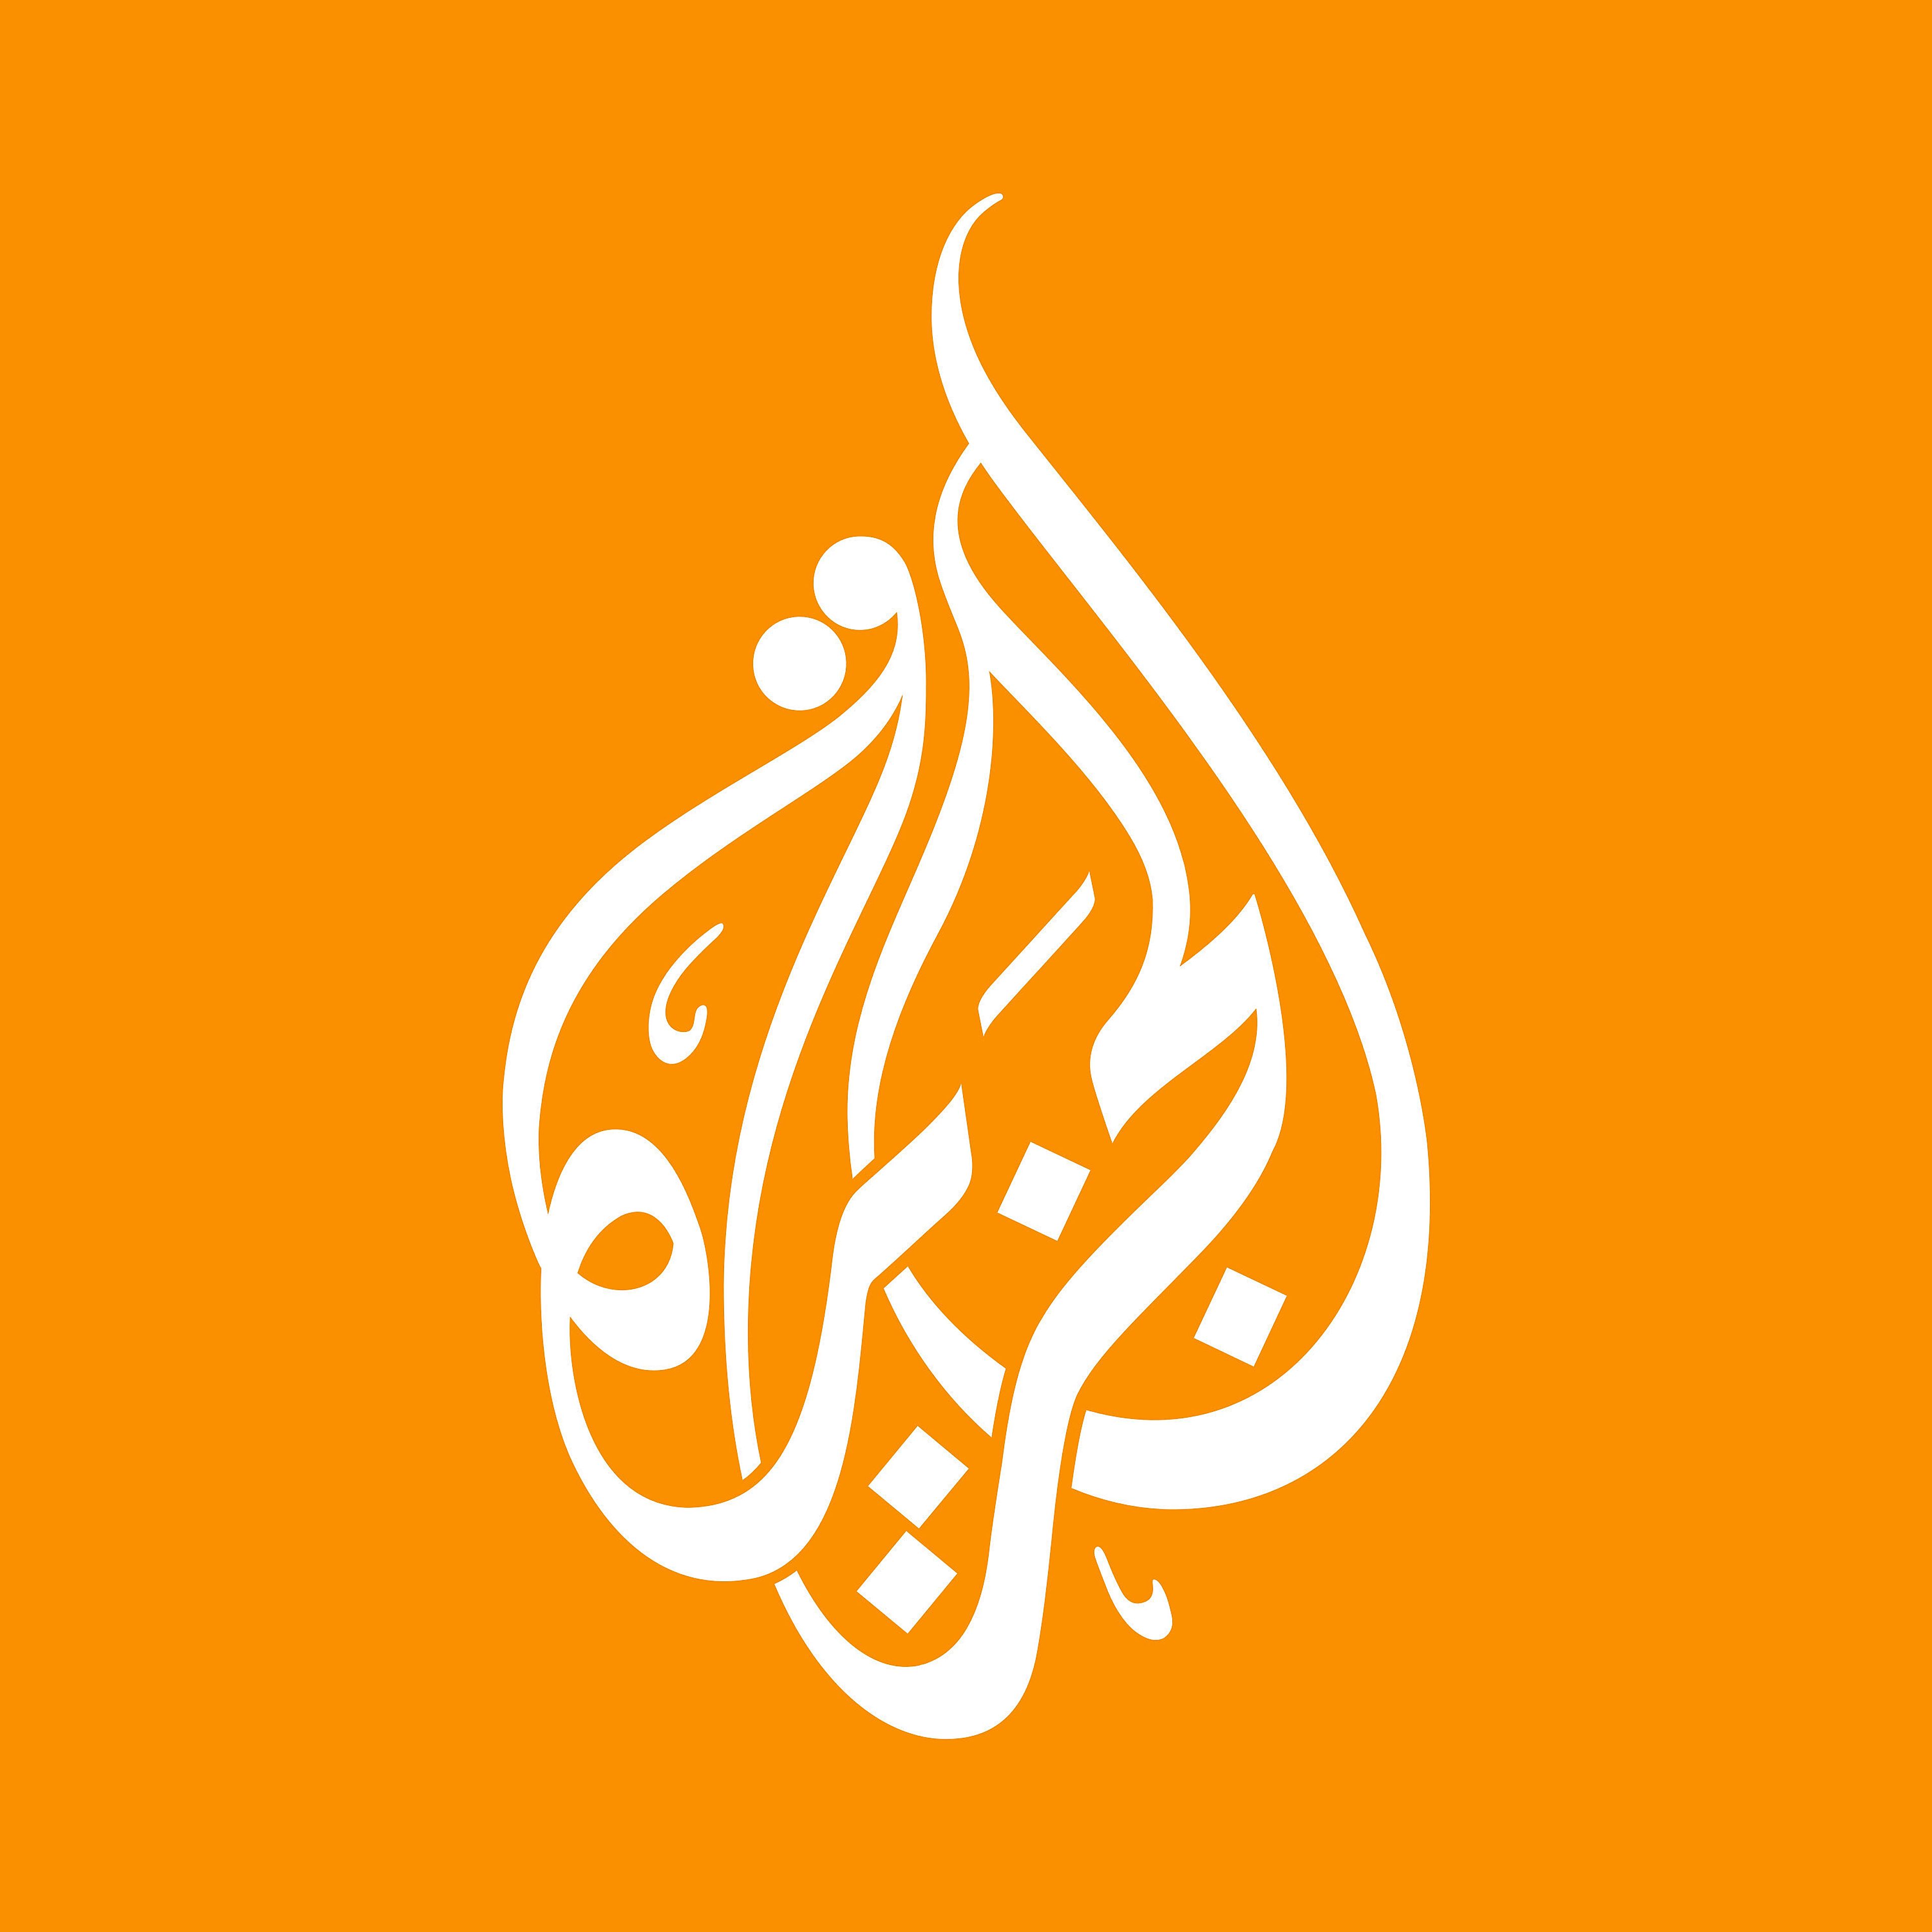 Al Jazeera News Updates cover image